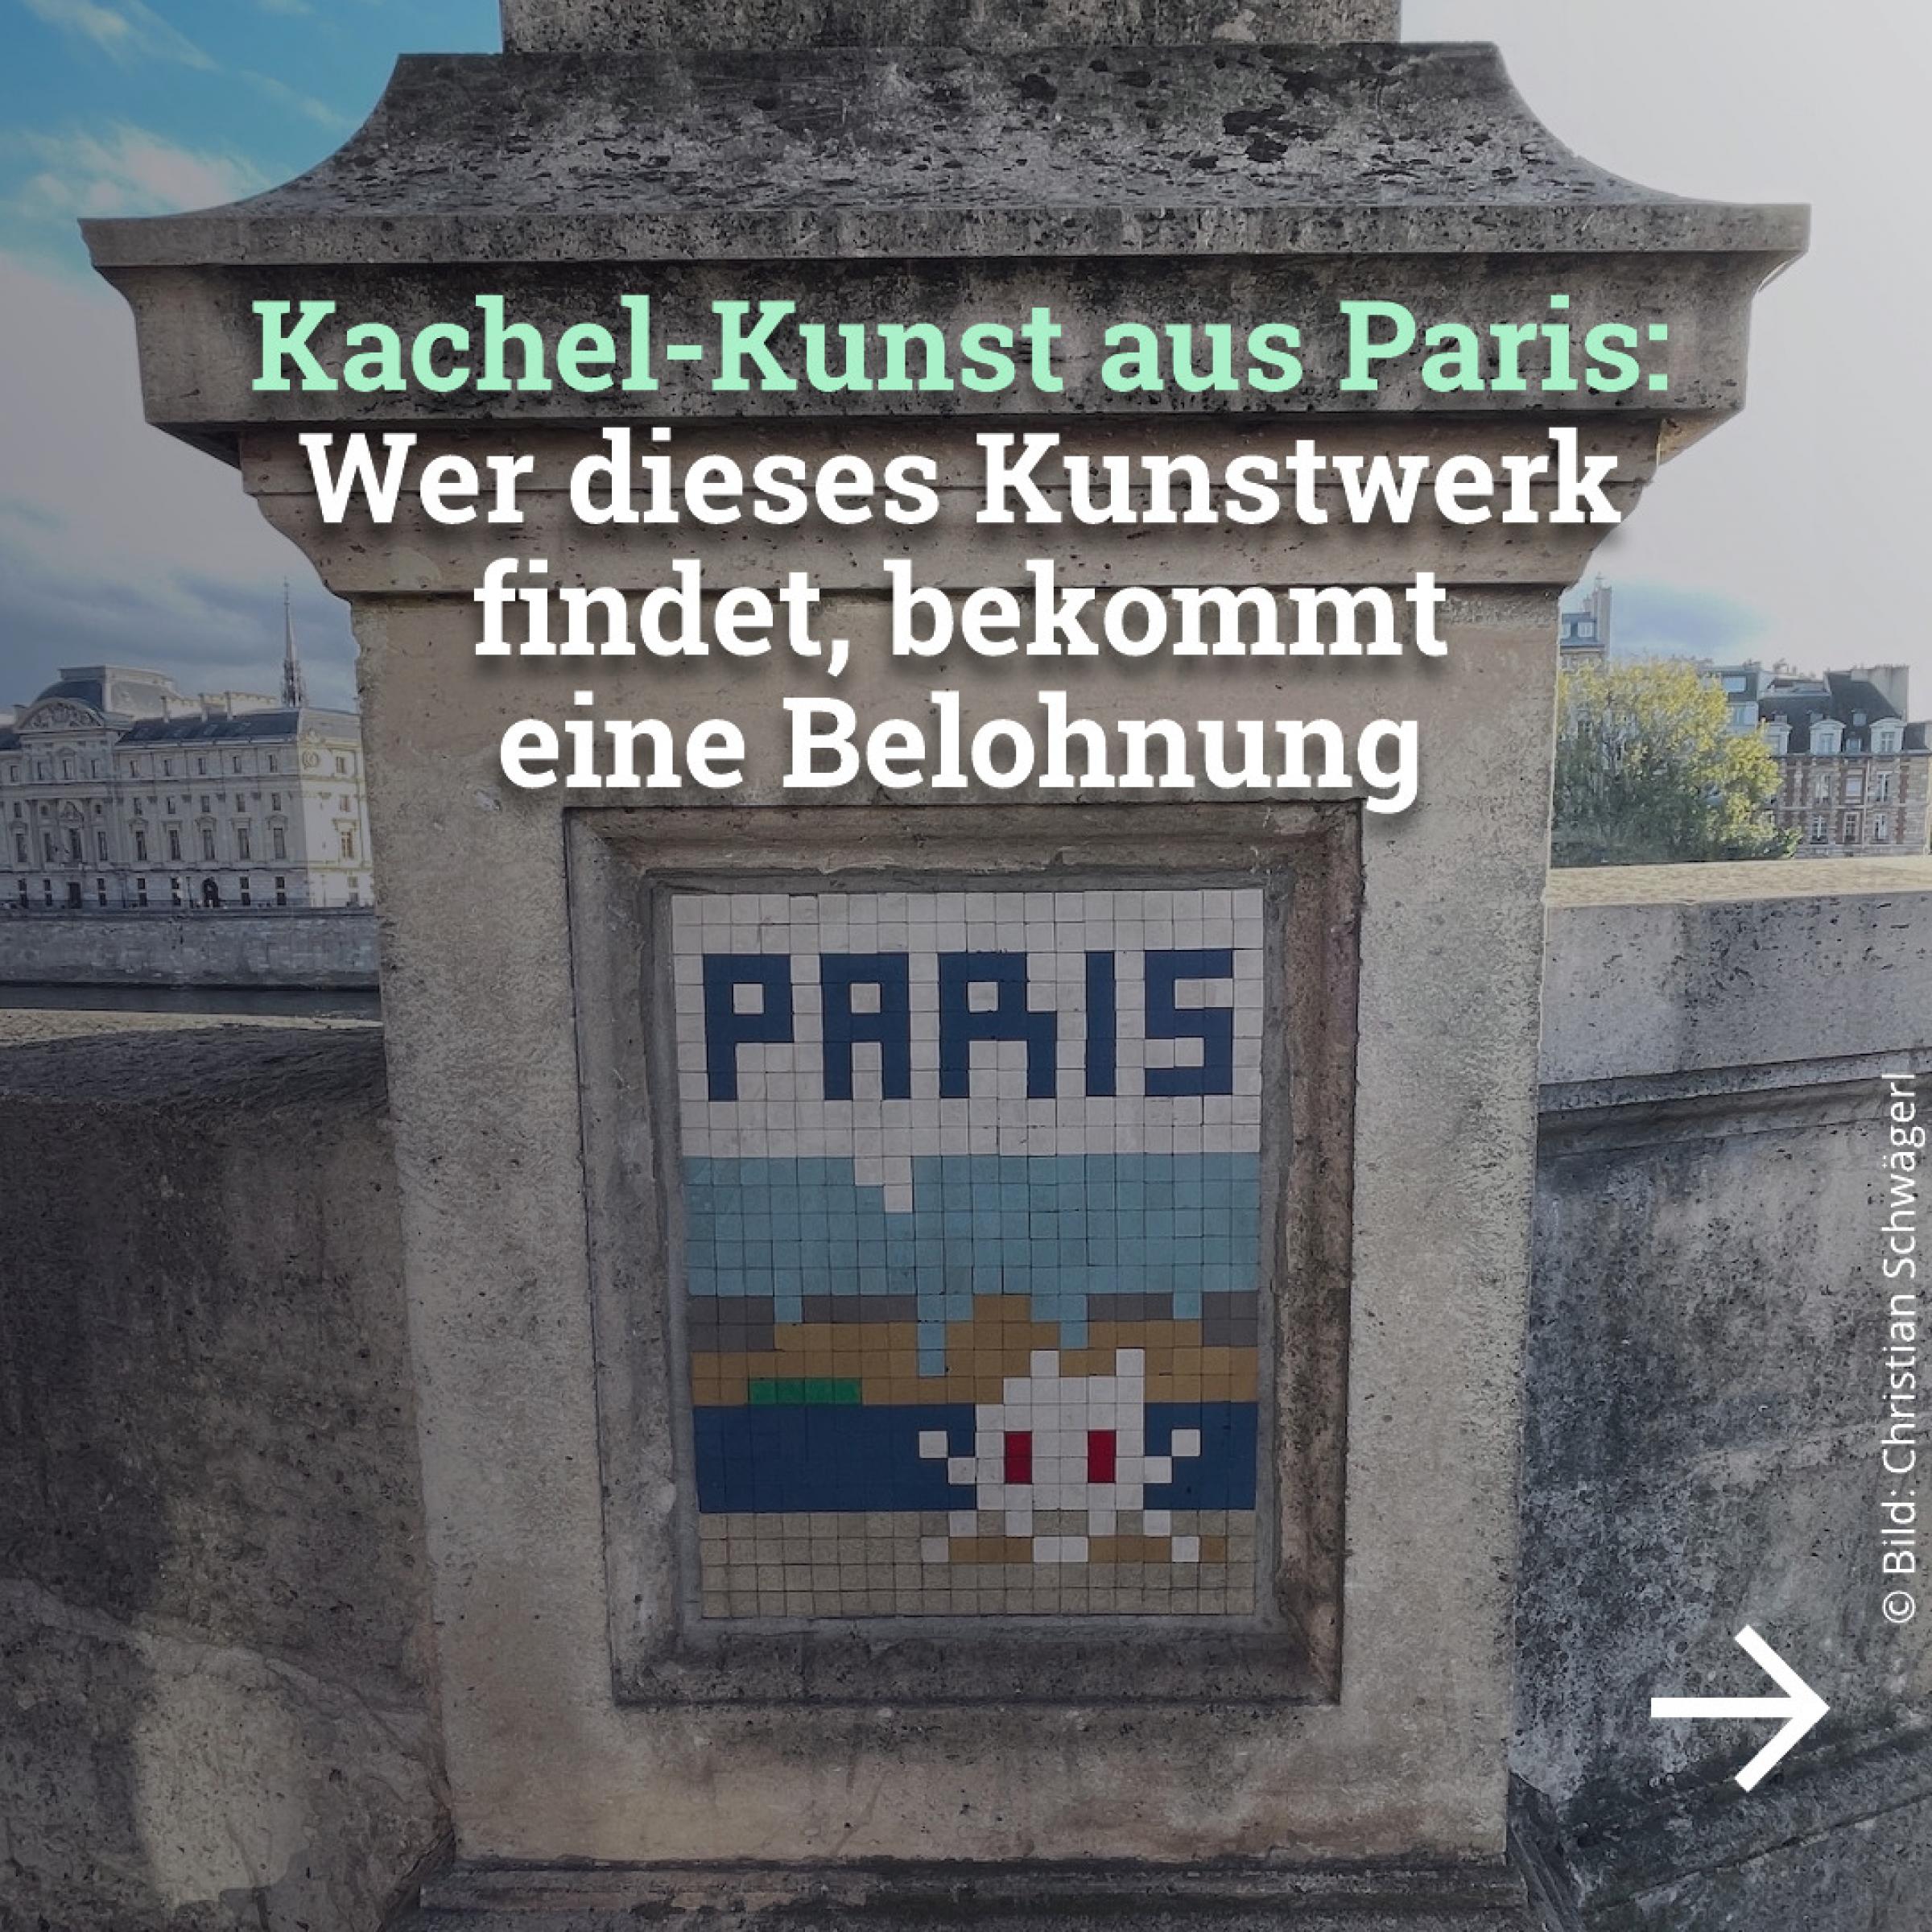 Kachel-Kunst aus Paris: Wer dieses Kunstwerk findet, bekommt eine Belohnung